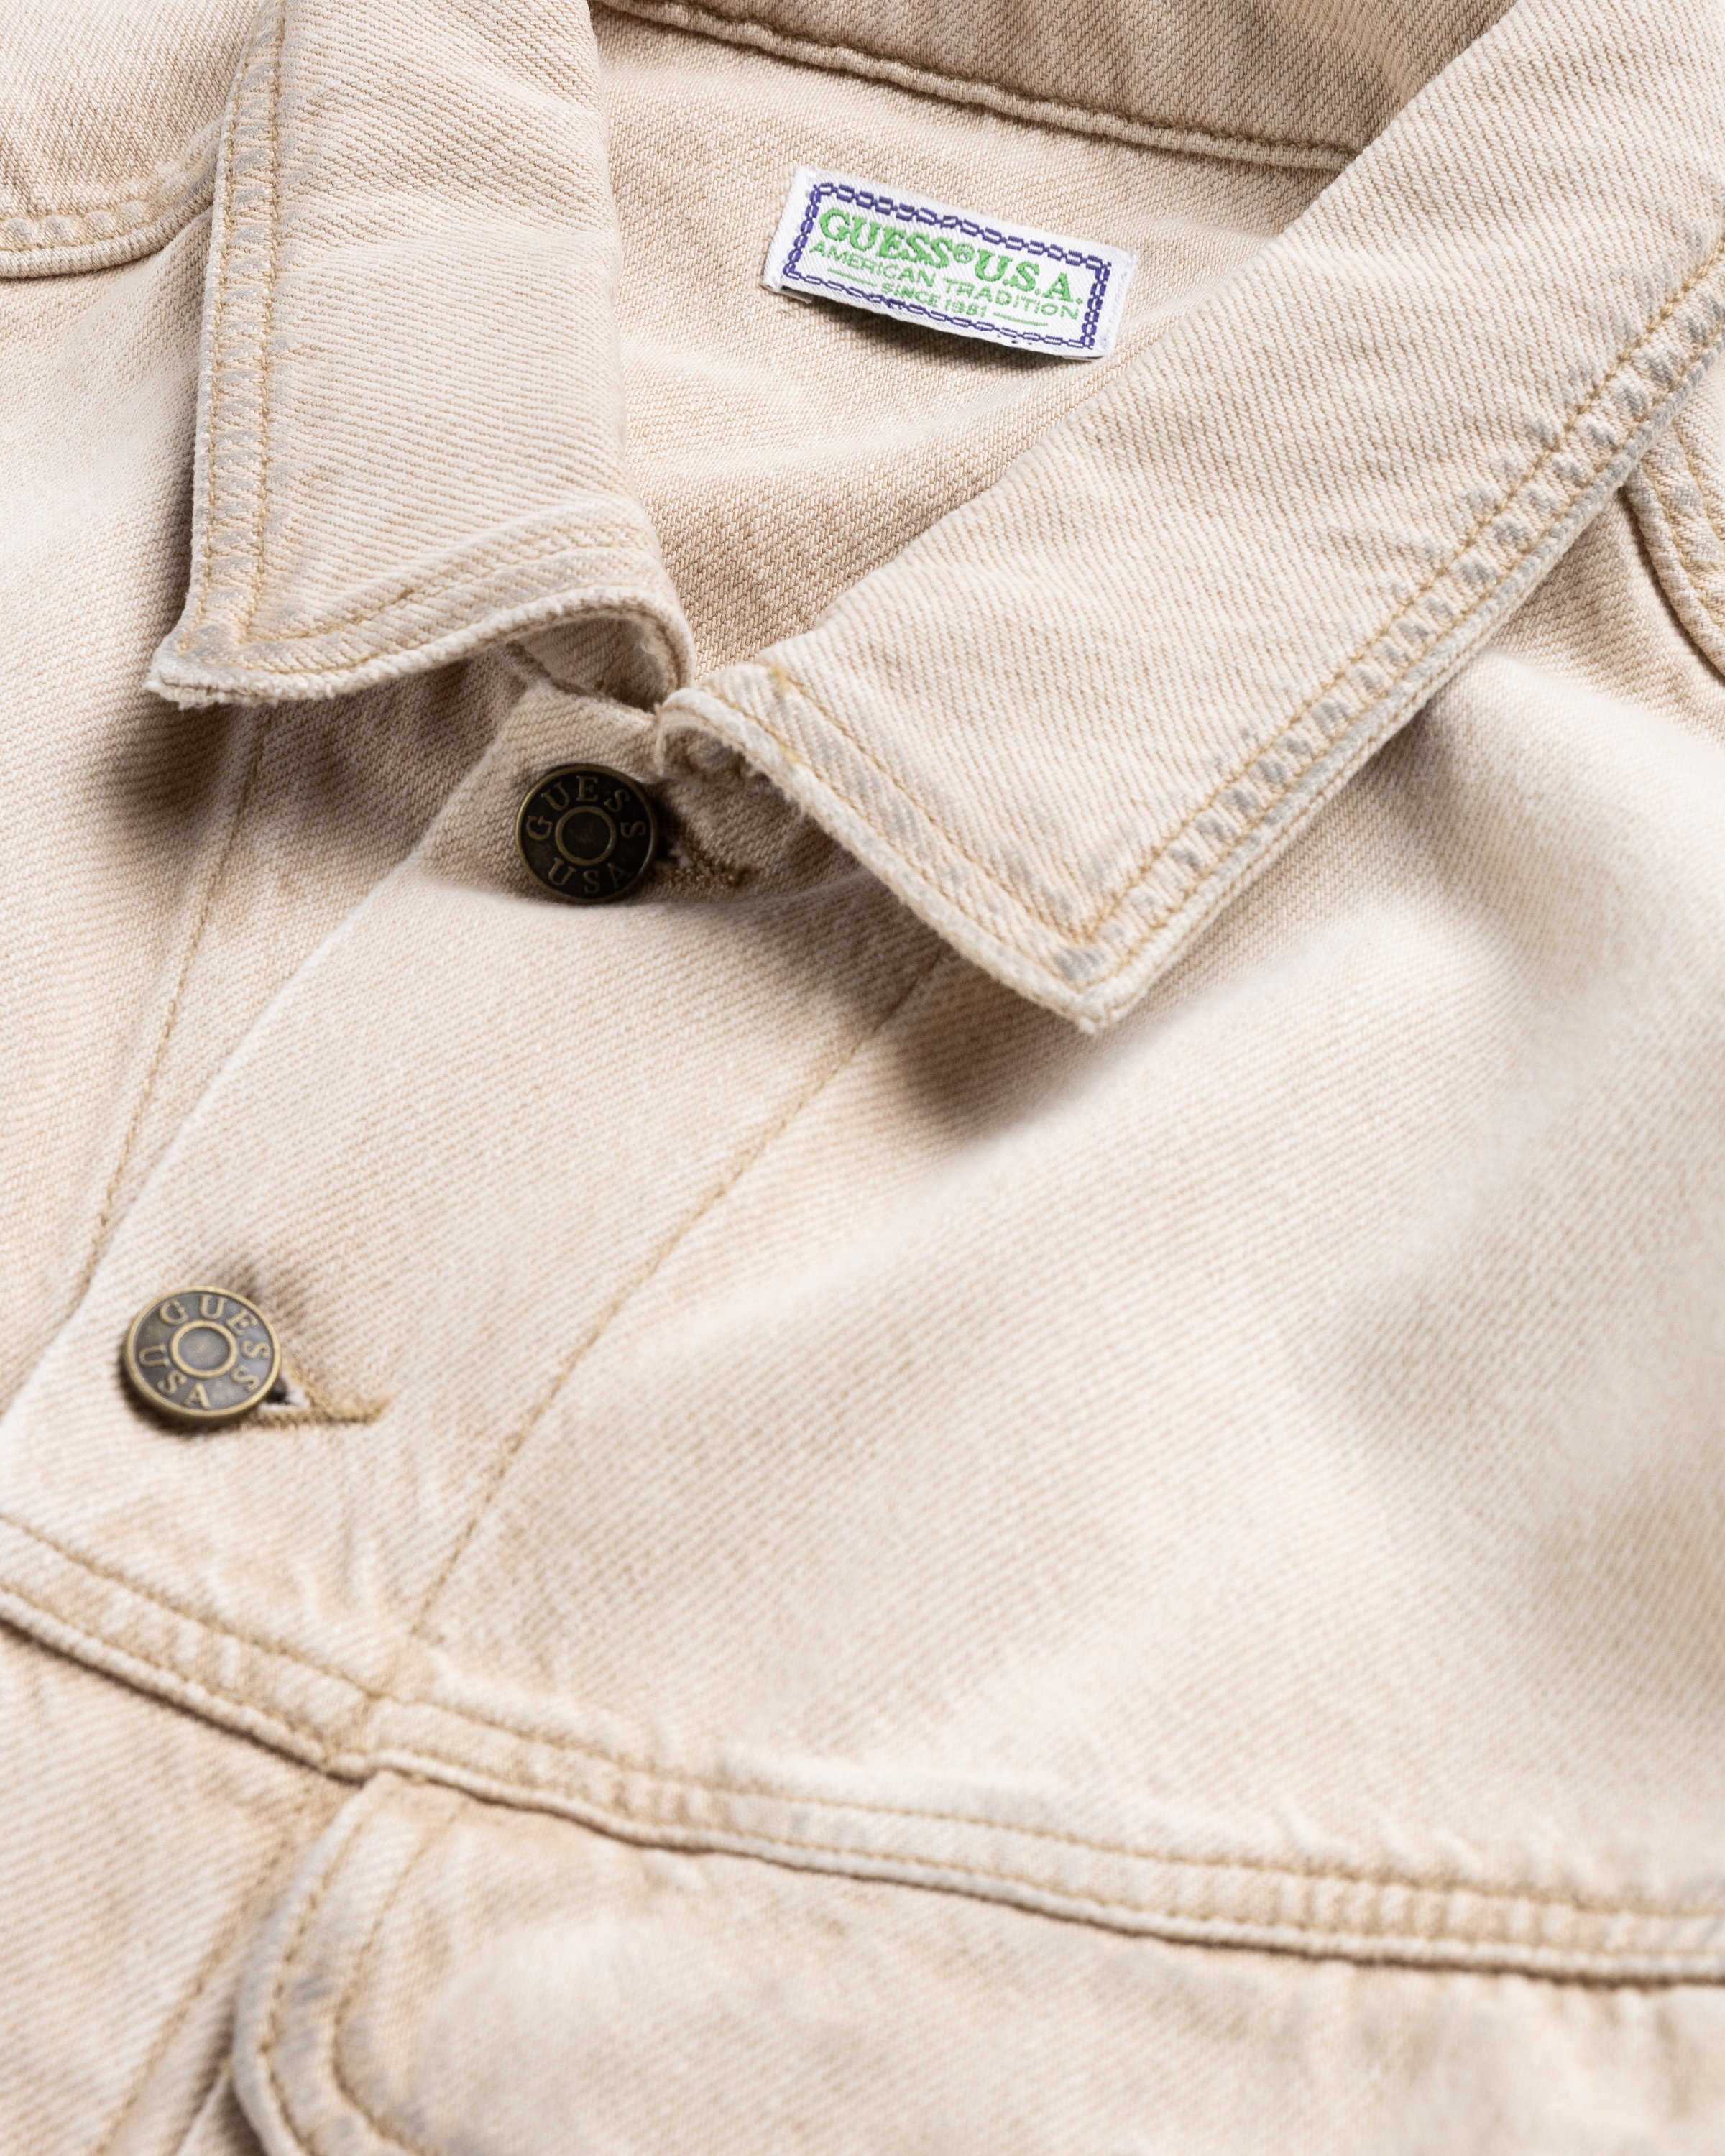 Guess USA - Vintage Denim Jacket Beige - Clothing - Beige - Image 5